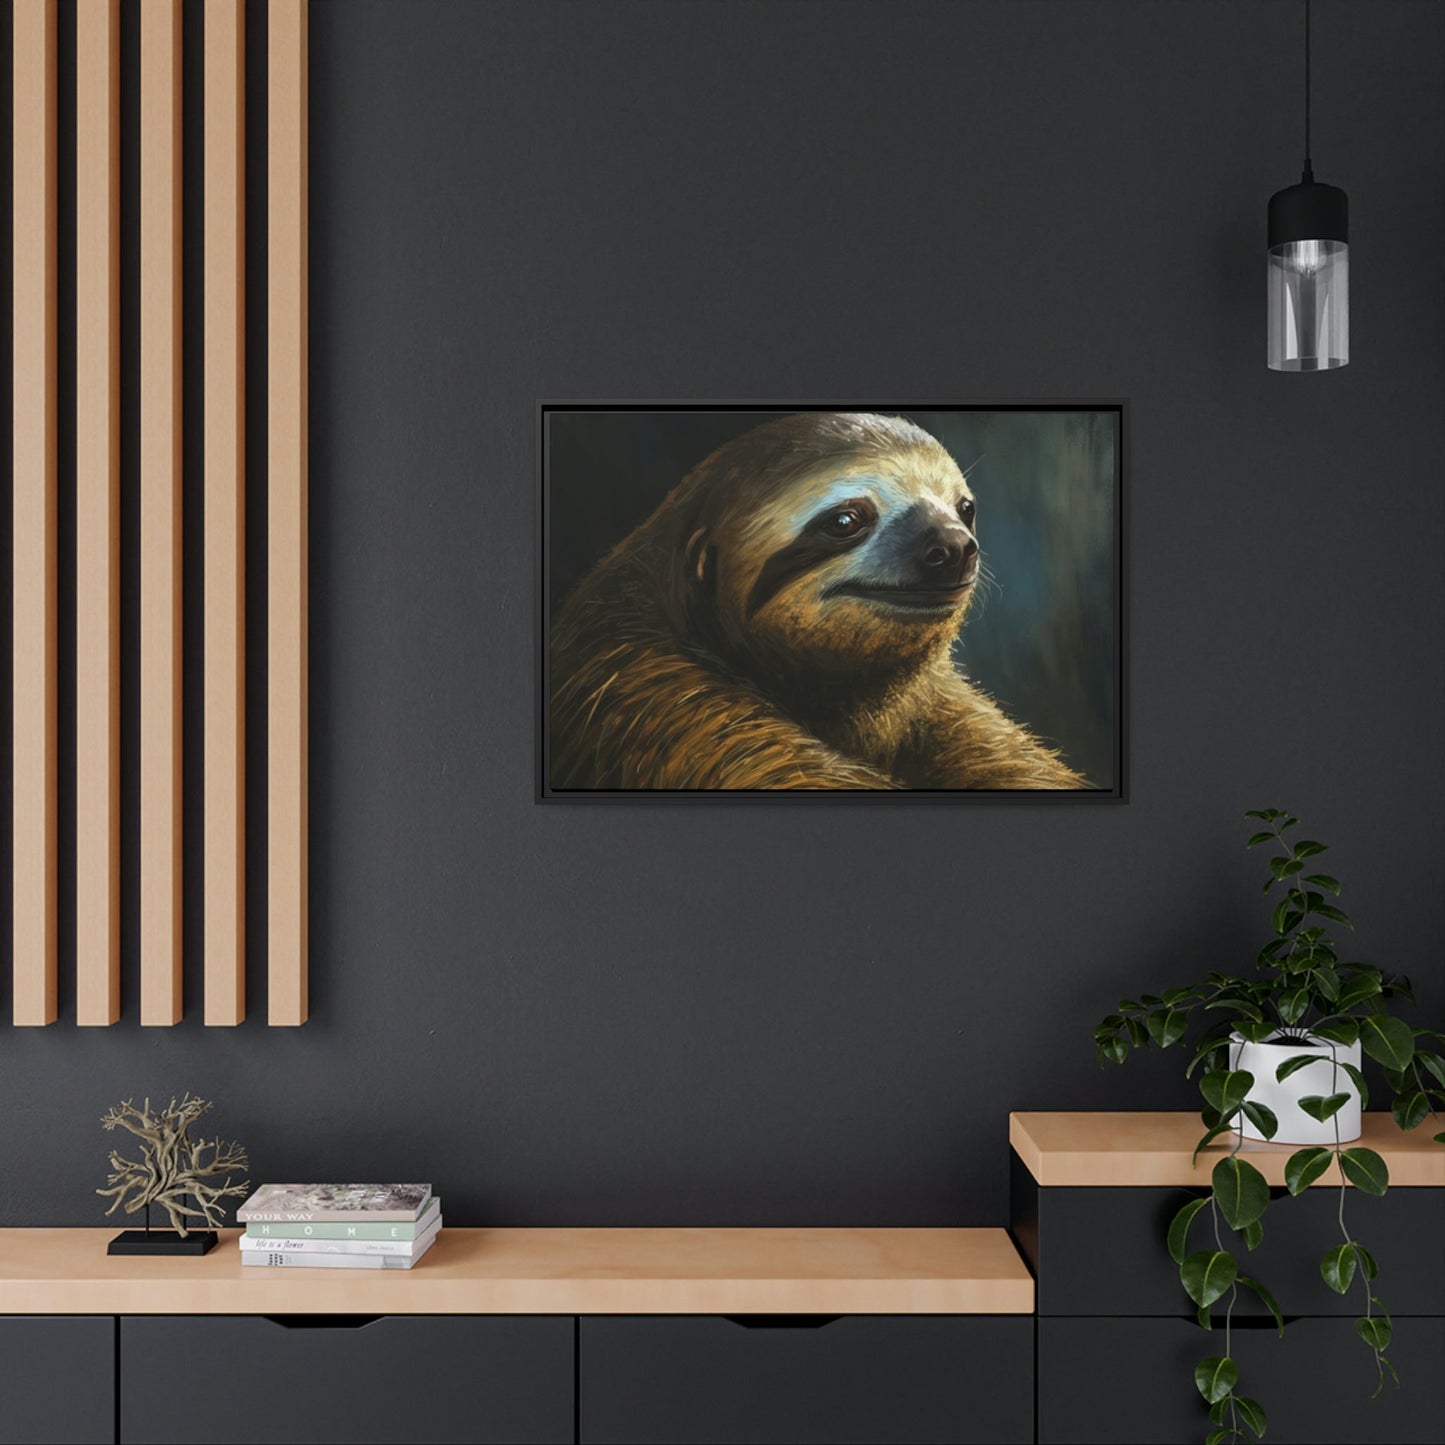 Sloth Sanctuary: A Peaceful Rainforest Retreat